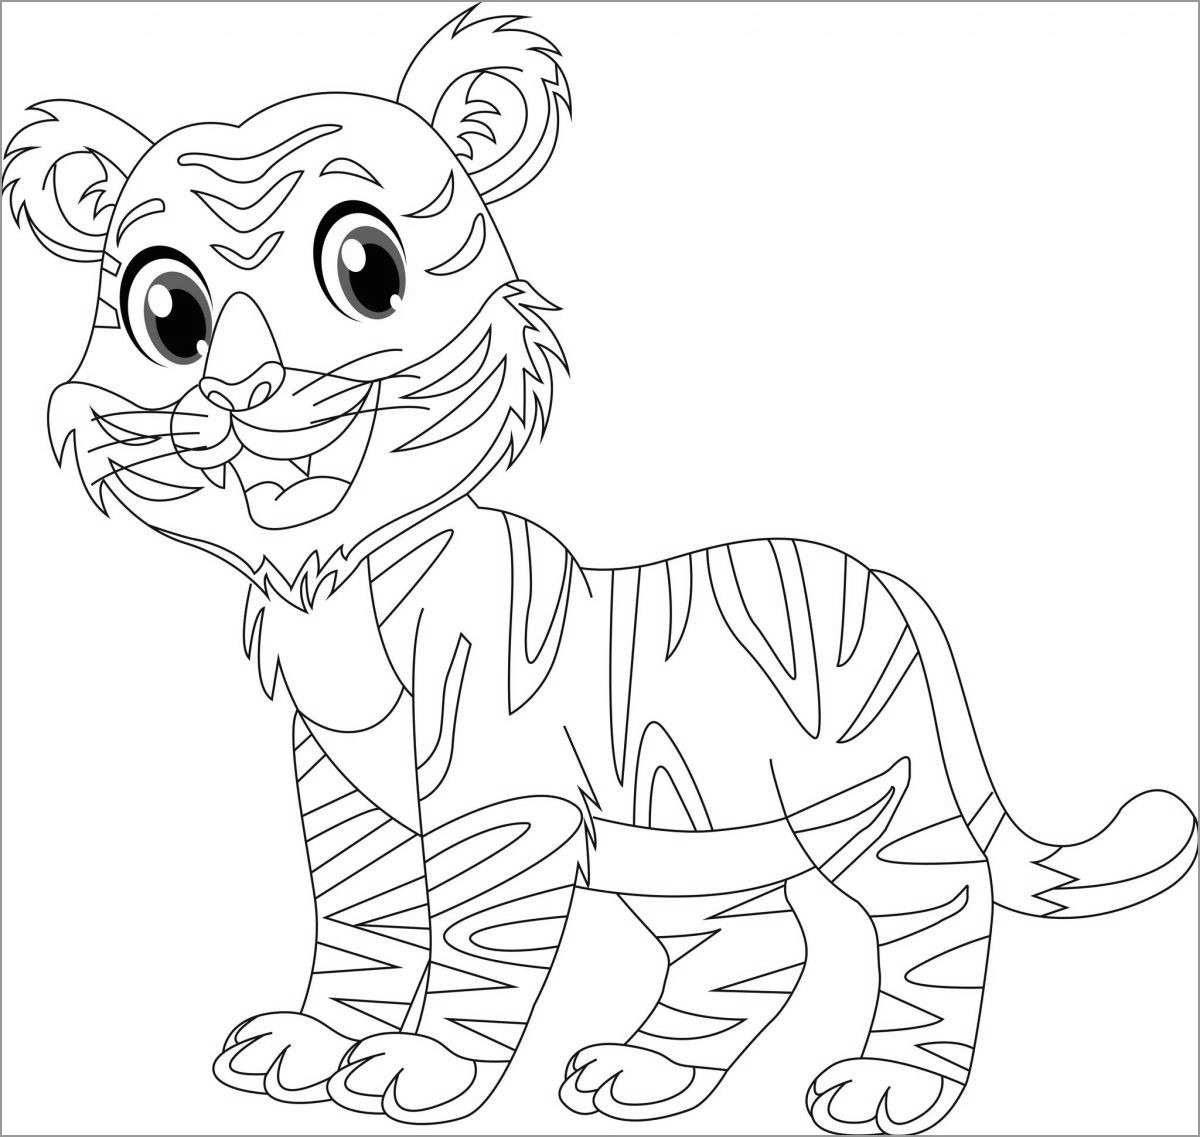 Cartoon Tiger Coloring Page